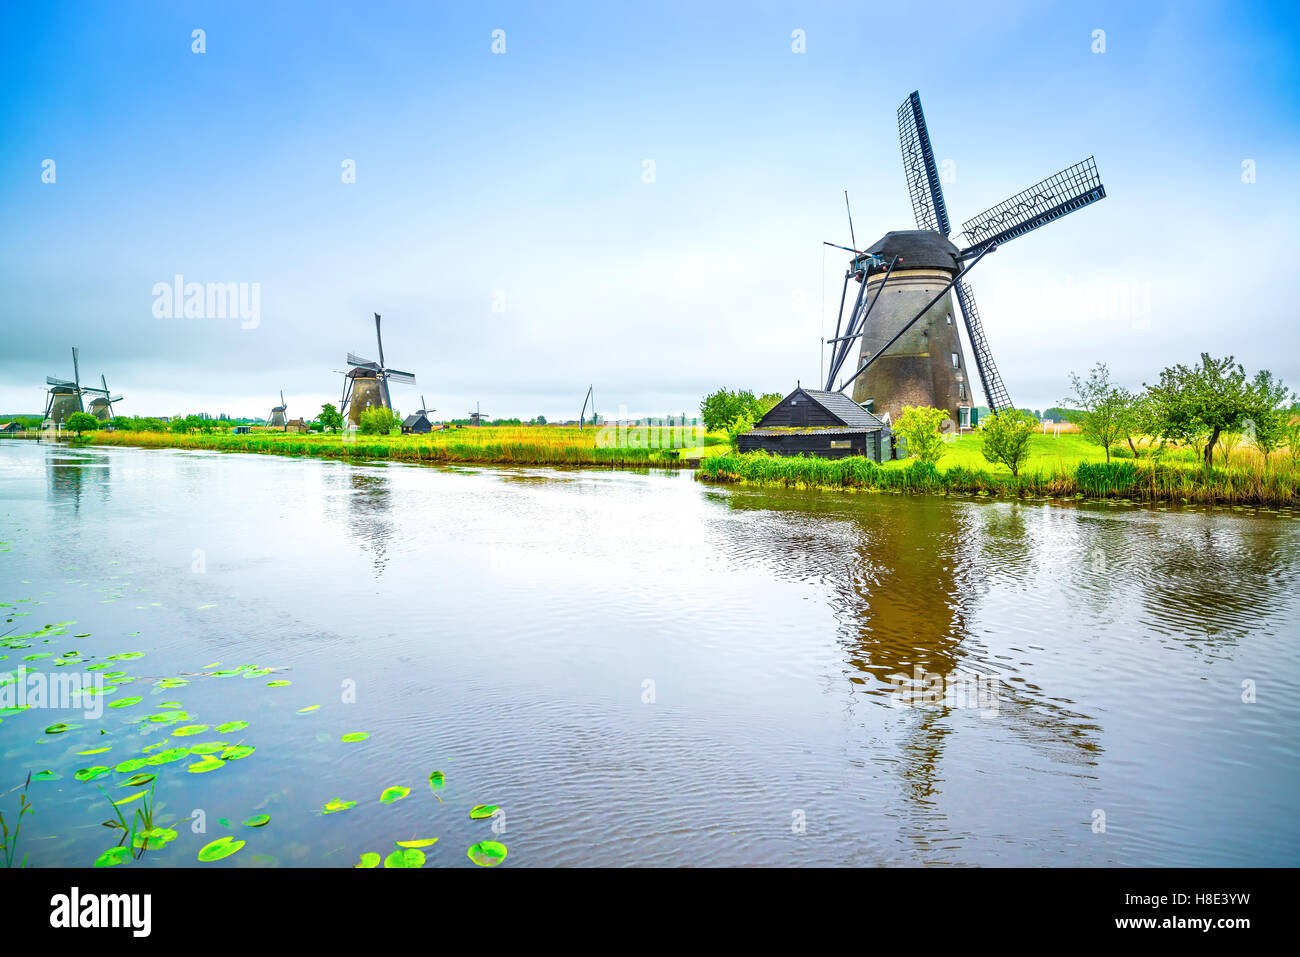 Les moulins à vent et de l'eau dans le canal, Kinderdijk en Hollande ou aux Pays-Bas. Unesco world heritage site. L'Europe. Banque D'Images